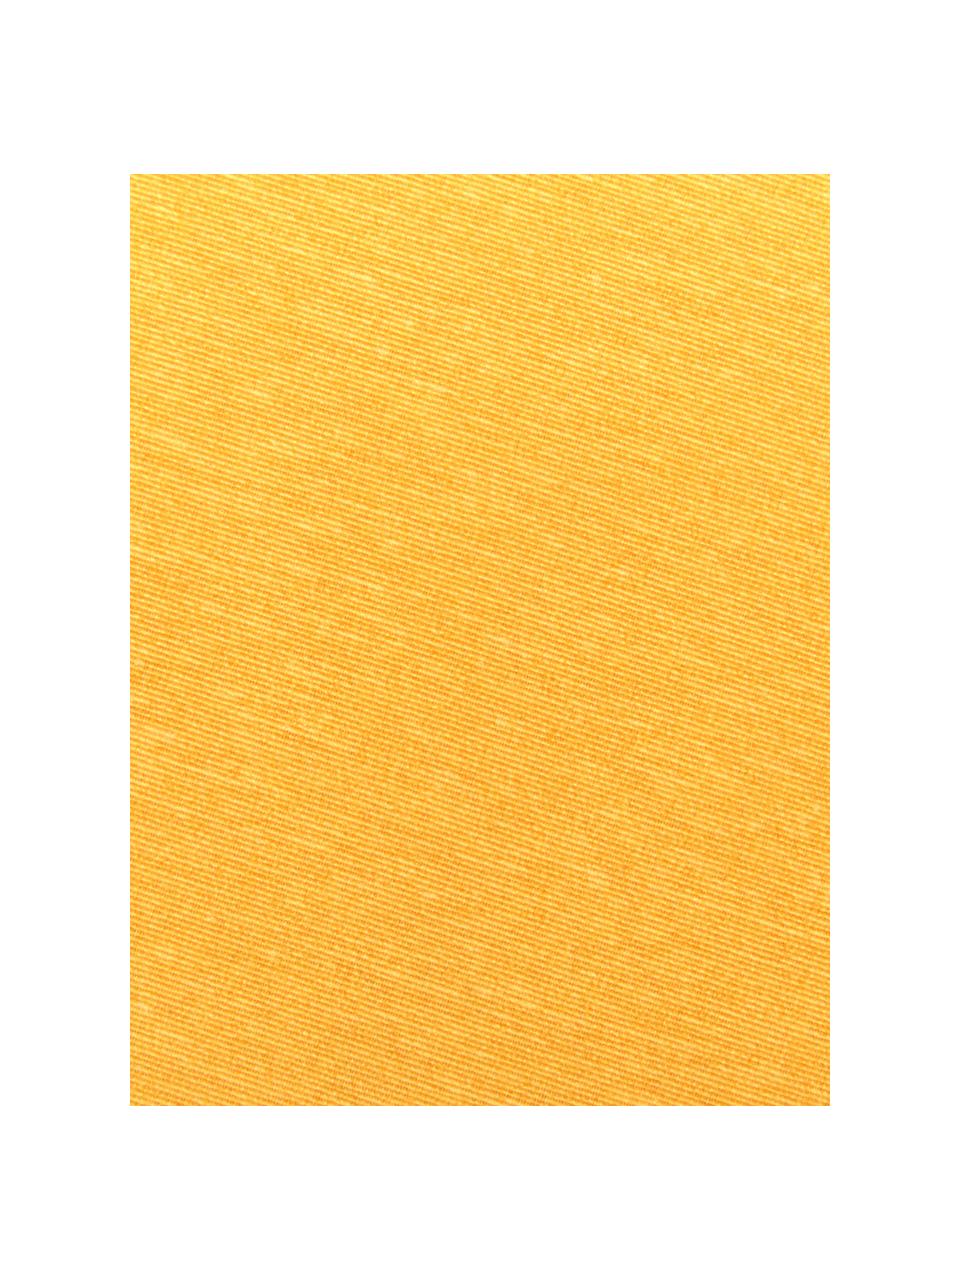 Einfarbige Bankauflage Panama in Gelb, 50% Baumwolle, 45% Polyester,
5% andere Fasern, Gelb, 48 x 120 cm